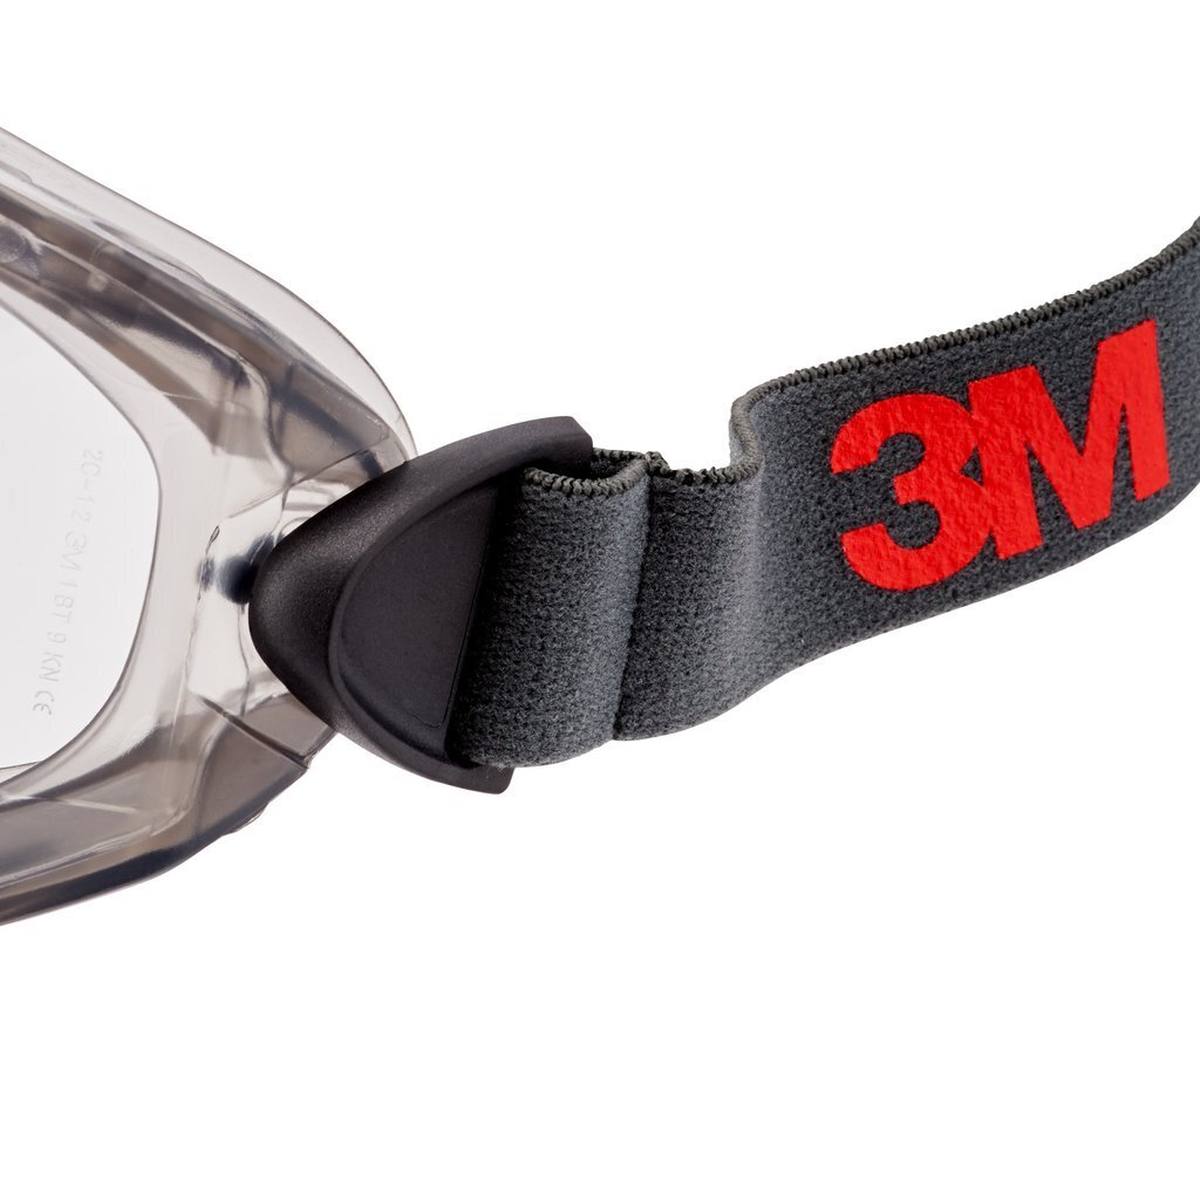 3M 2891-SGAF Occhiali a visione completa, con fessura di ventilazione, cerniere regolabili, rivestimento antiappannamento